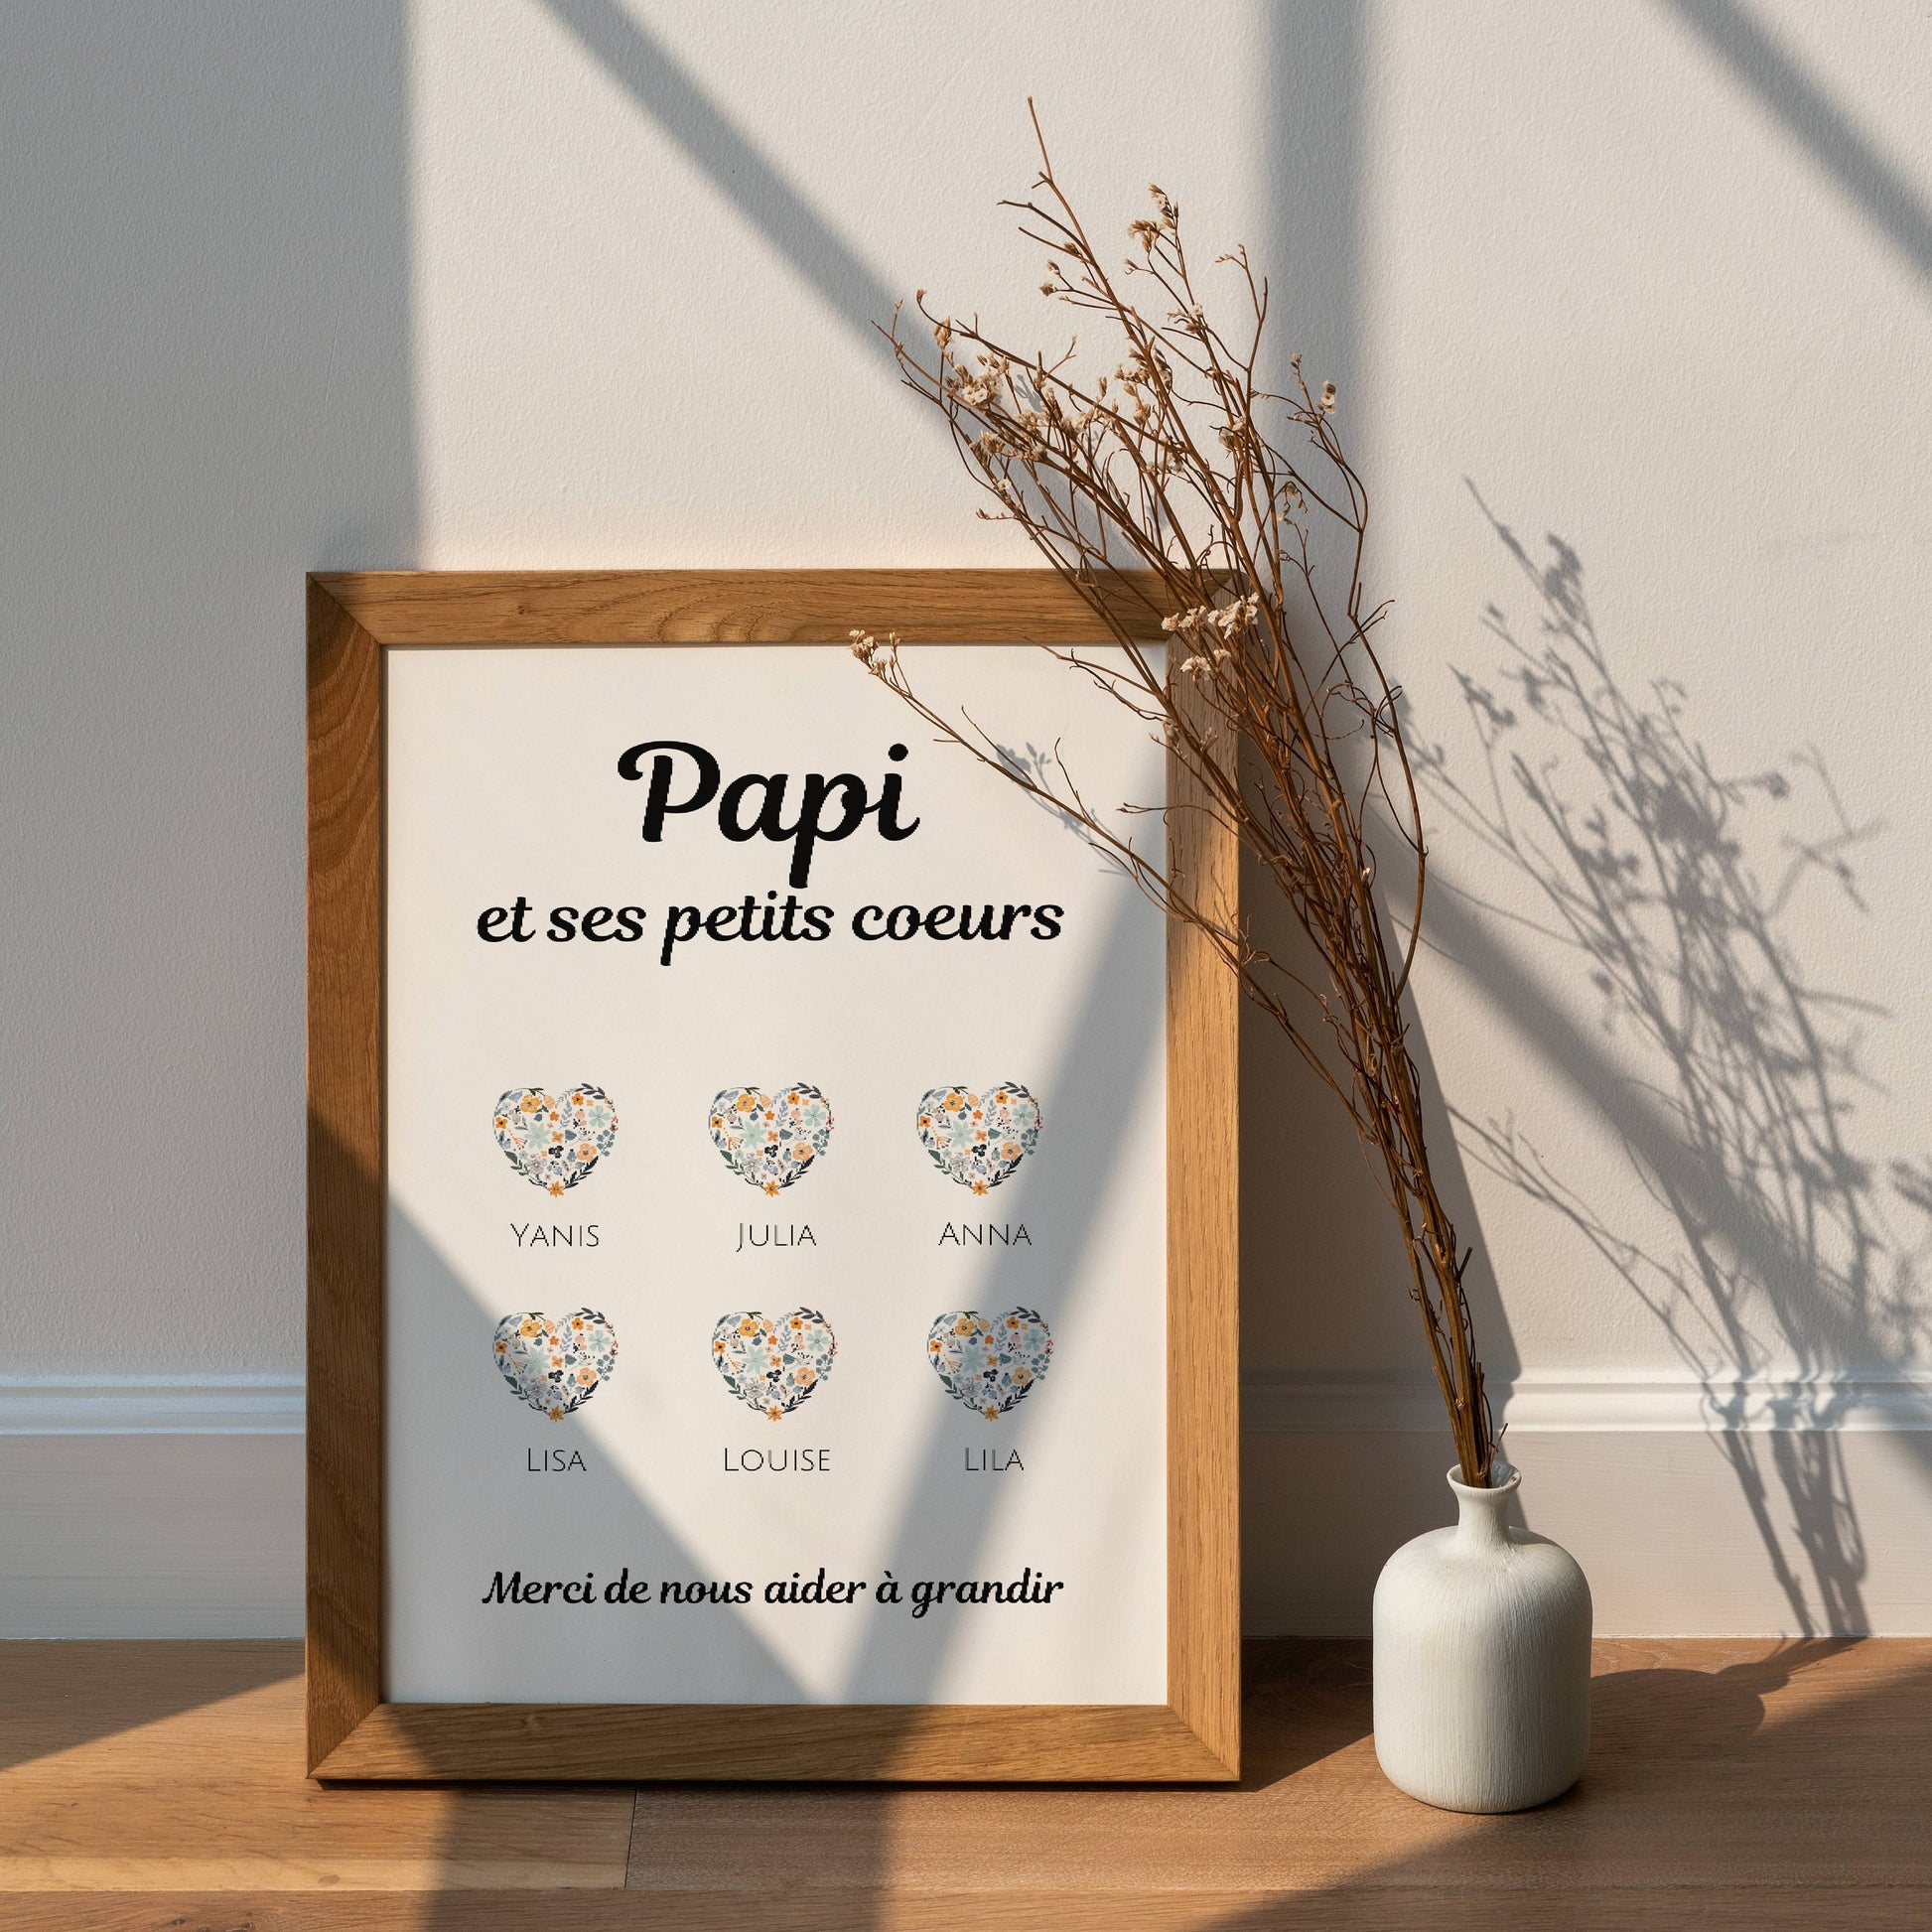 Affiche papa personnalisée photos - cadeau personnalisé papa par Le Te – Le  Temps des Paillettes